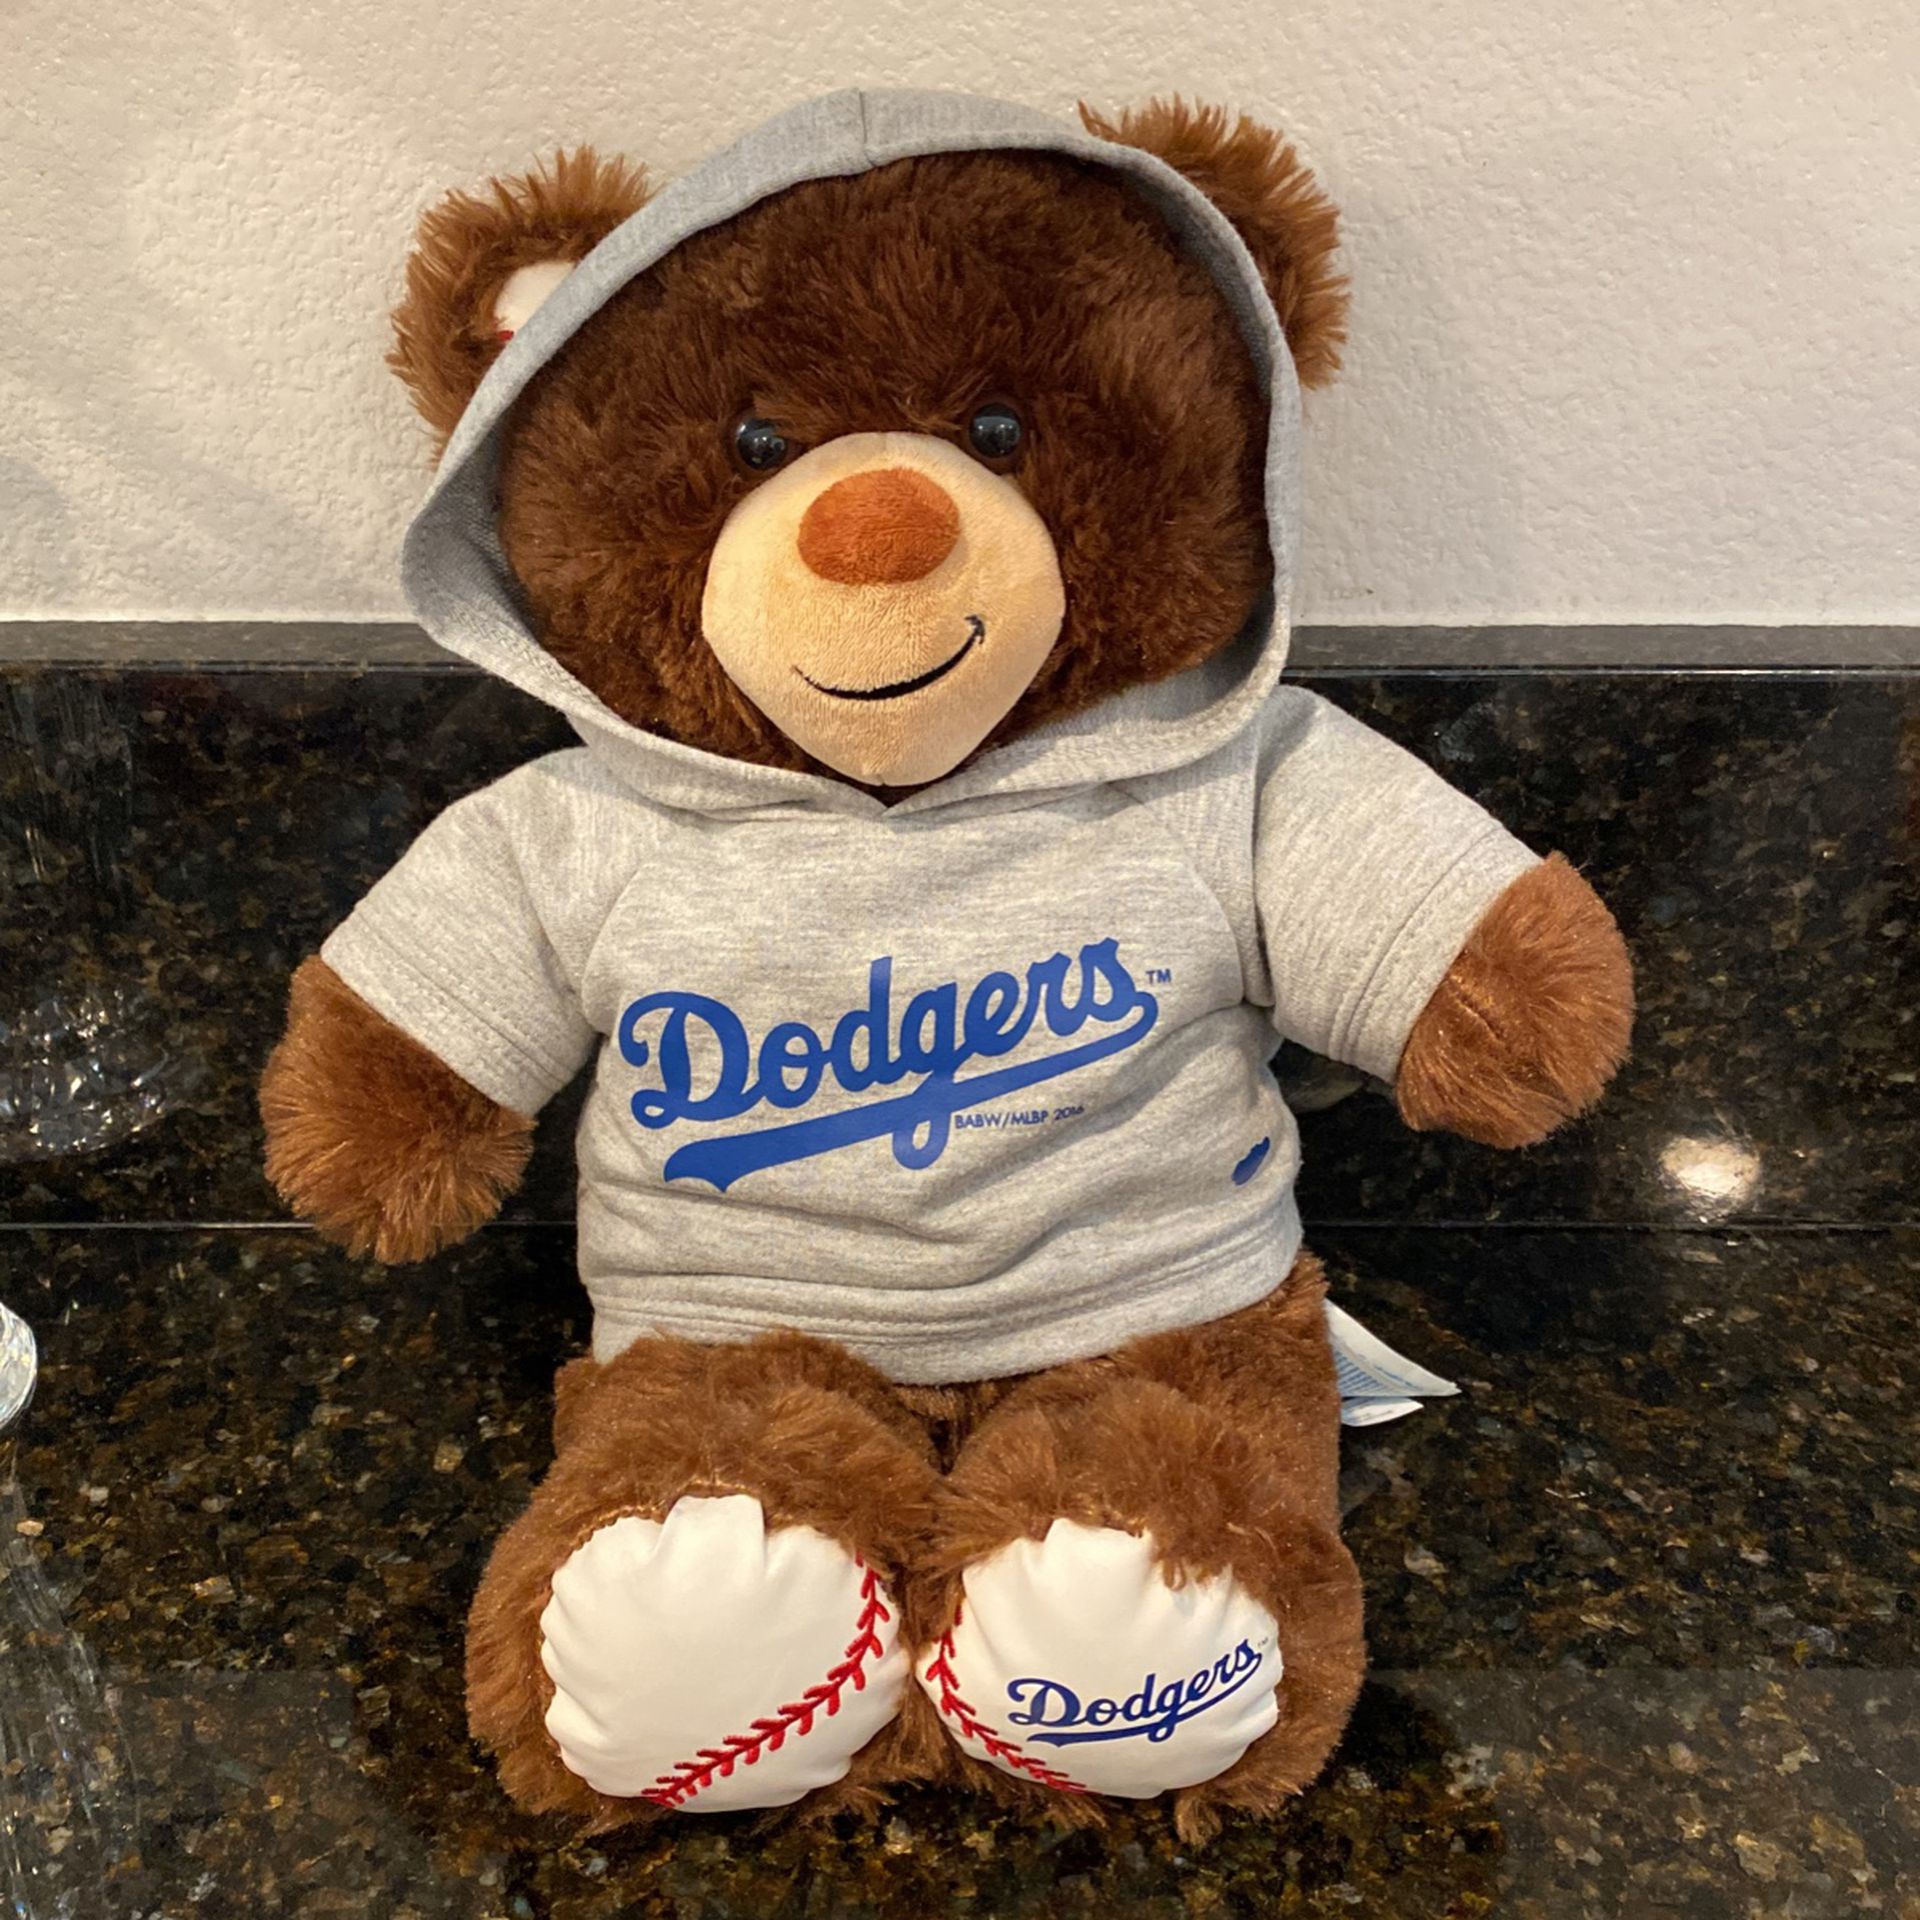 Dodgers Build-A-Bear Teddy